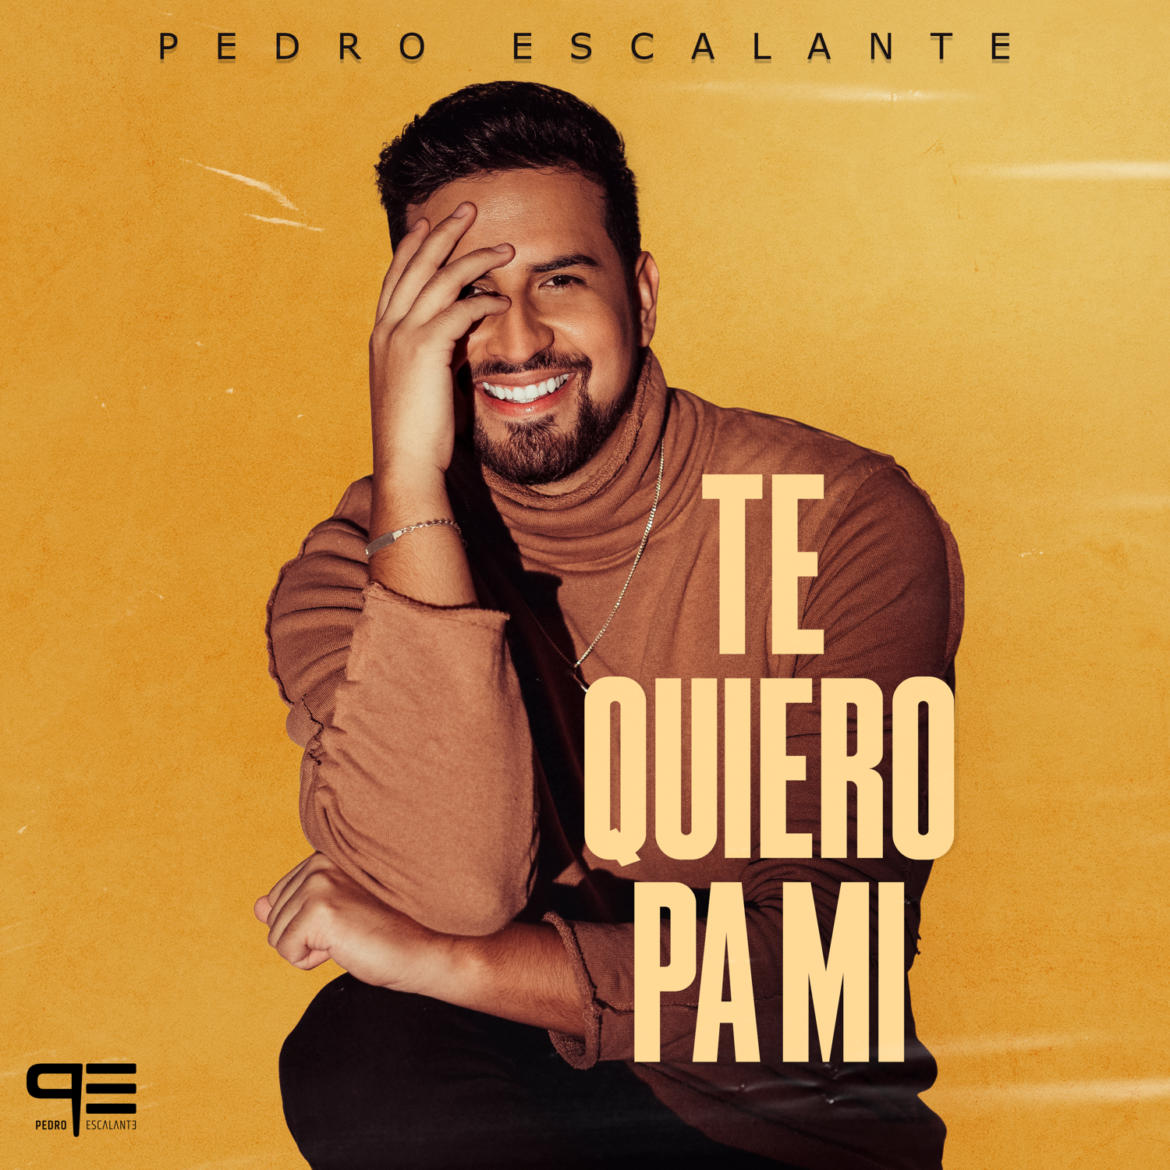 Pedro Escalante lanza nuevo tema “Te Quiero Pa Mí” un merengue pegajoso